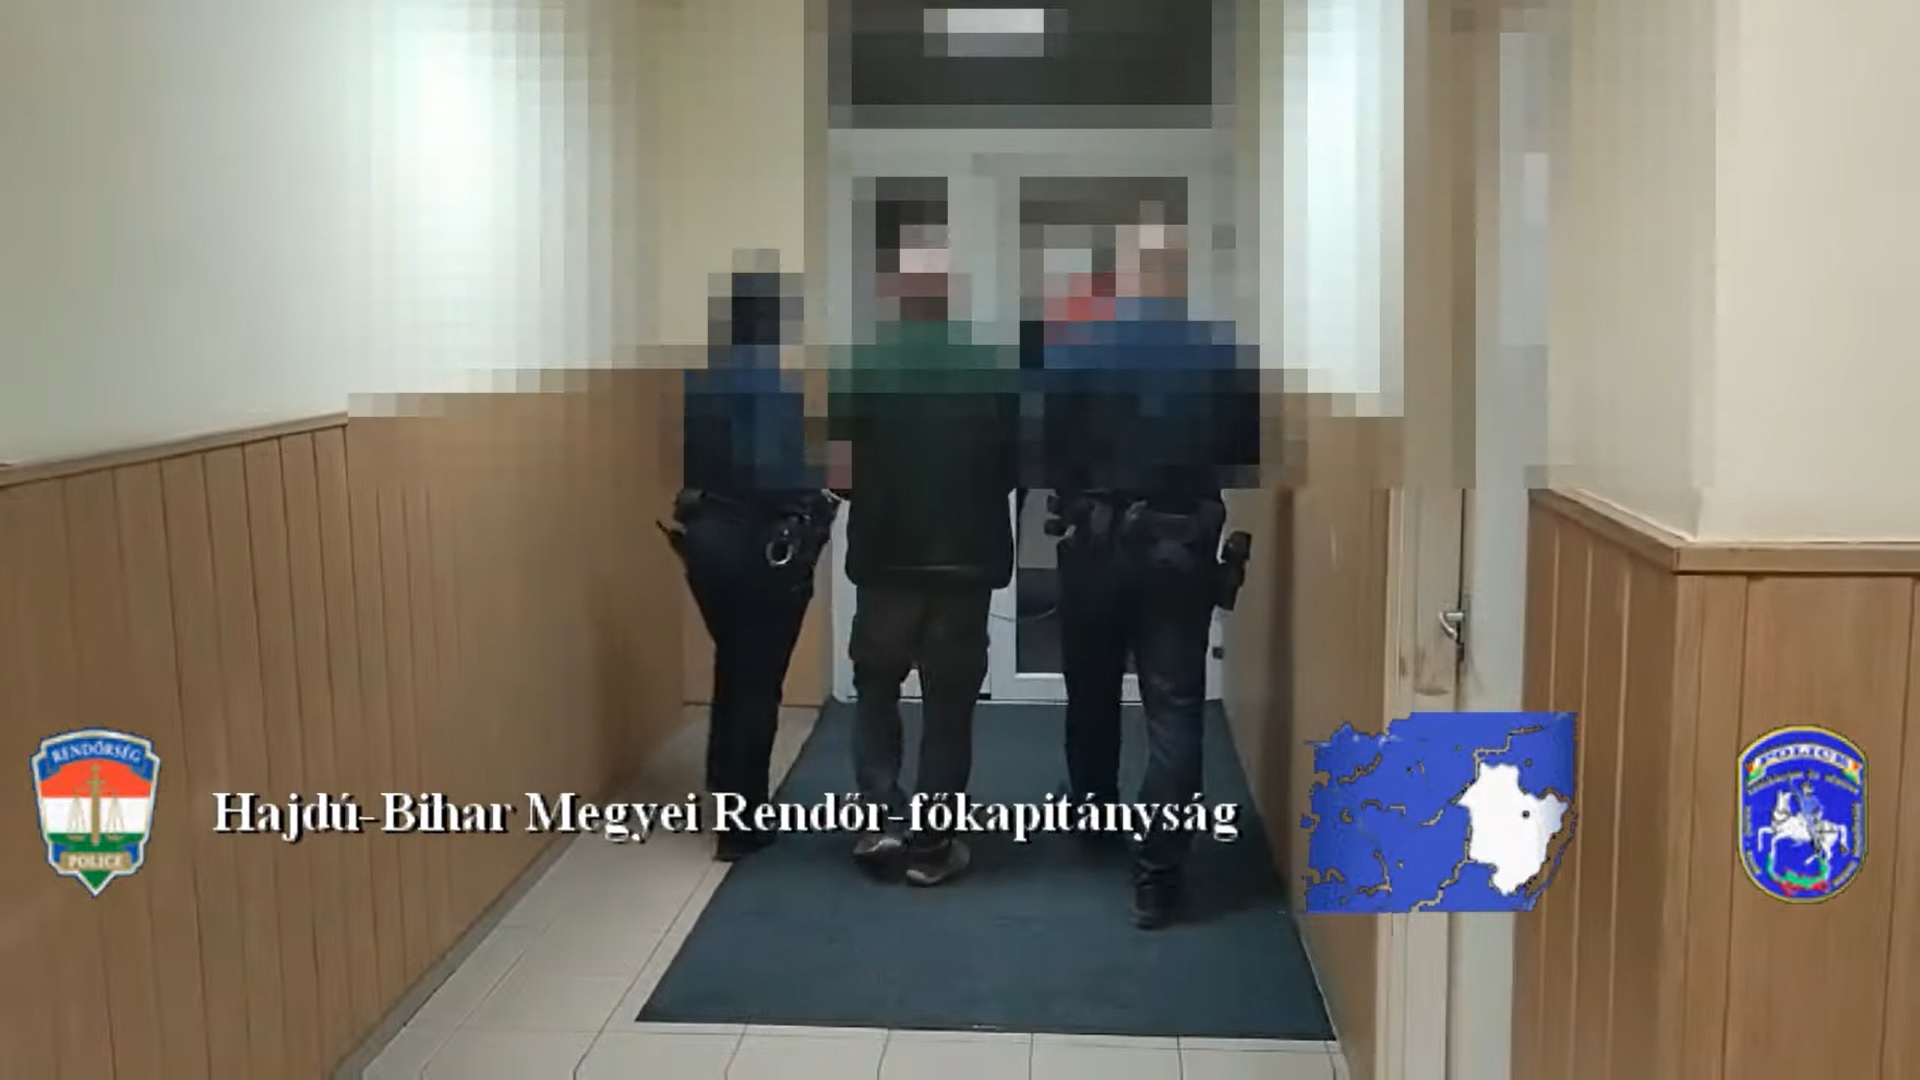 Álrendőr bírságolt szabálytalan maszkviselésre hivatkozva Debrecenben – elfogták